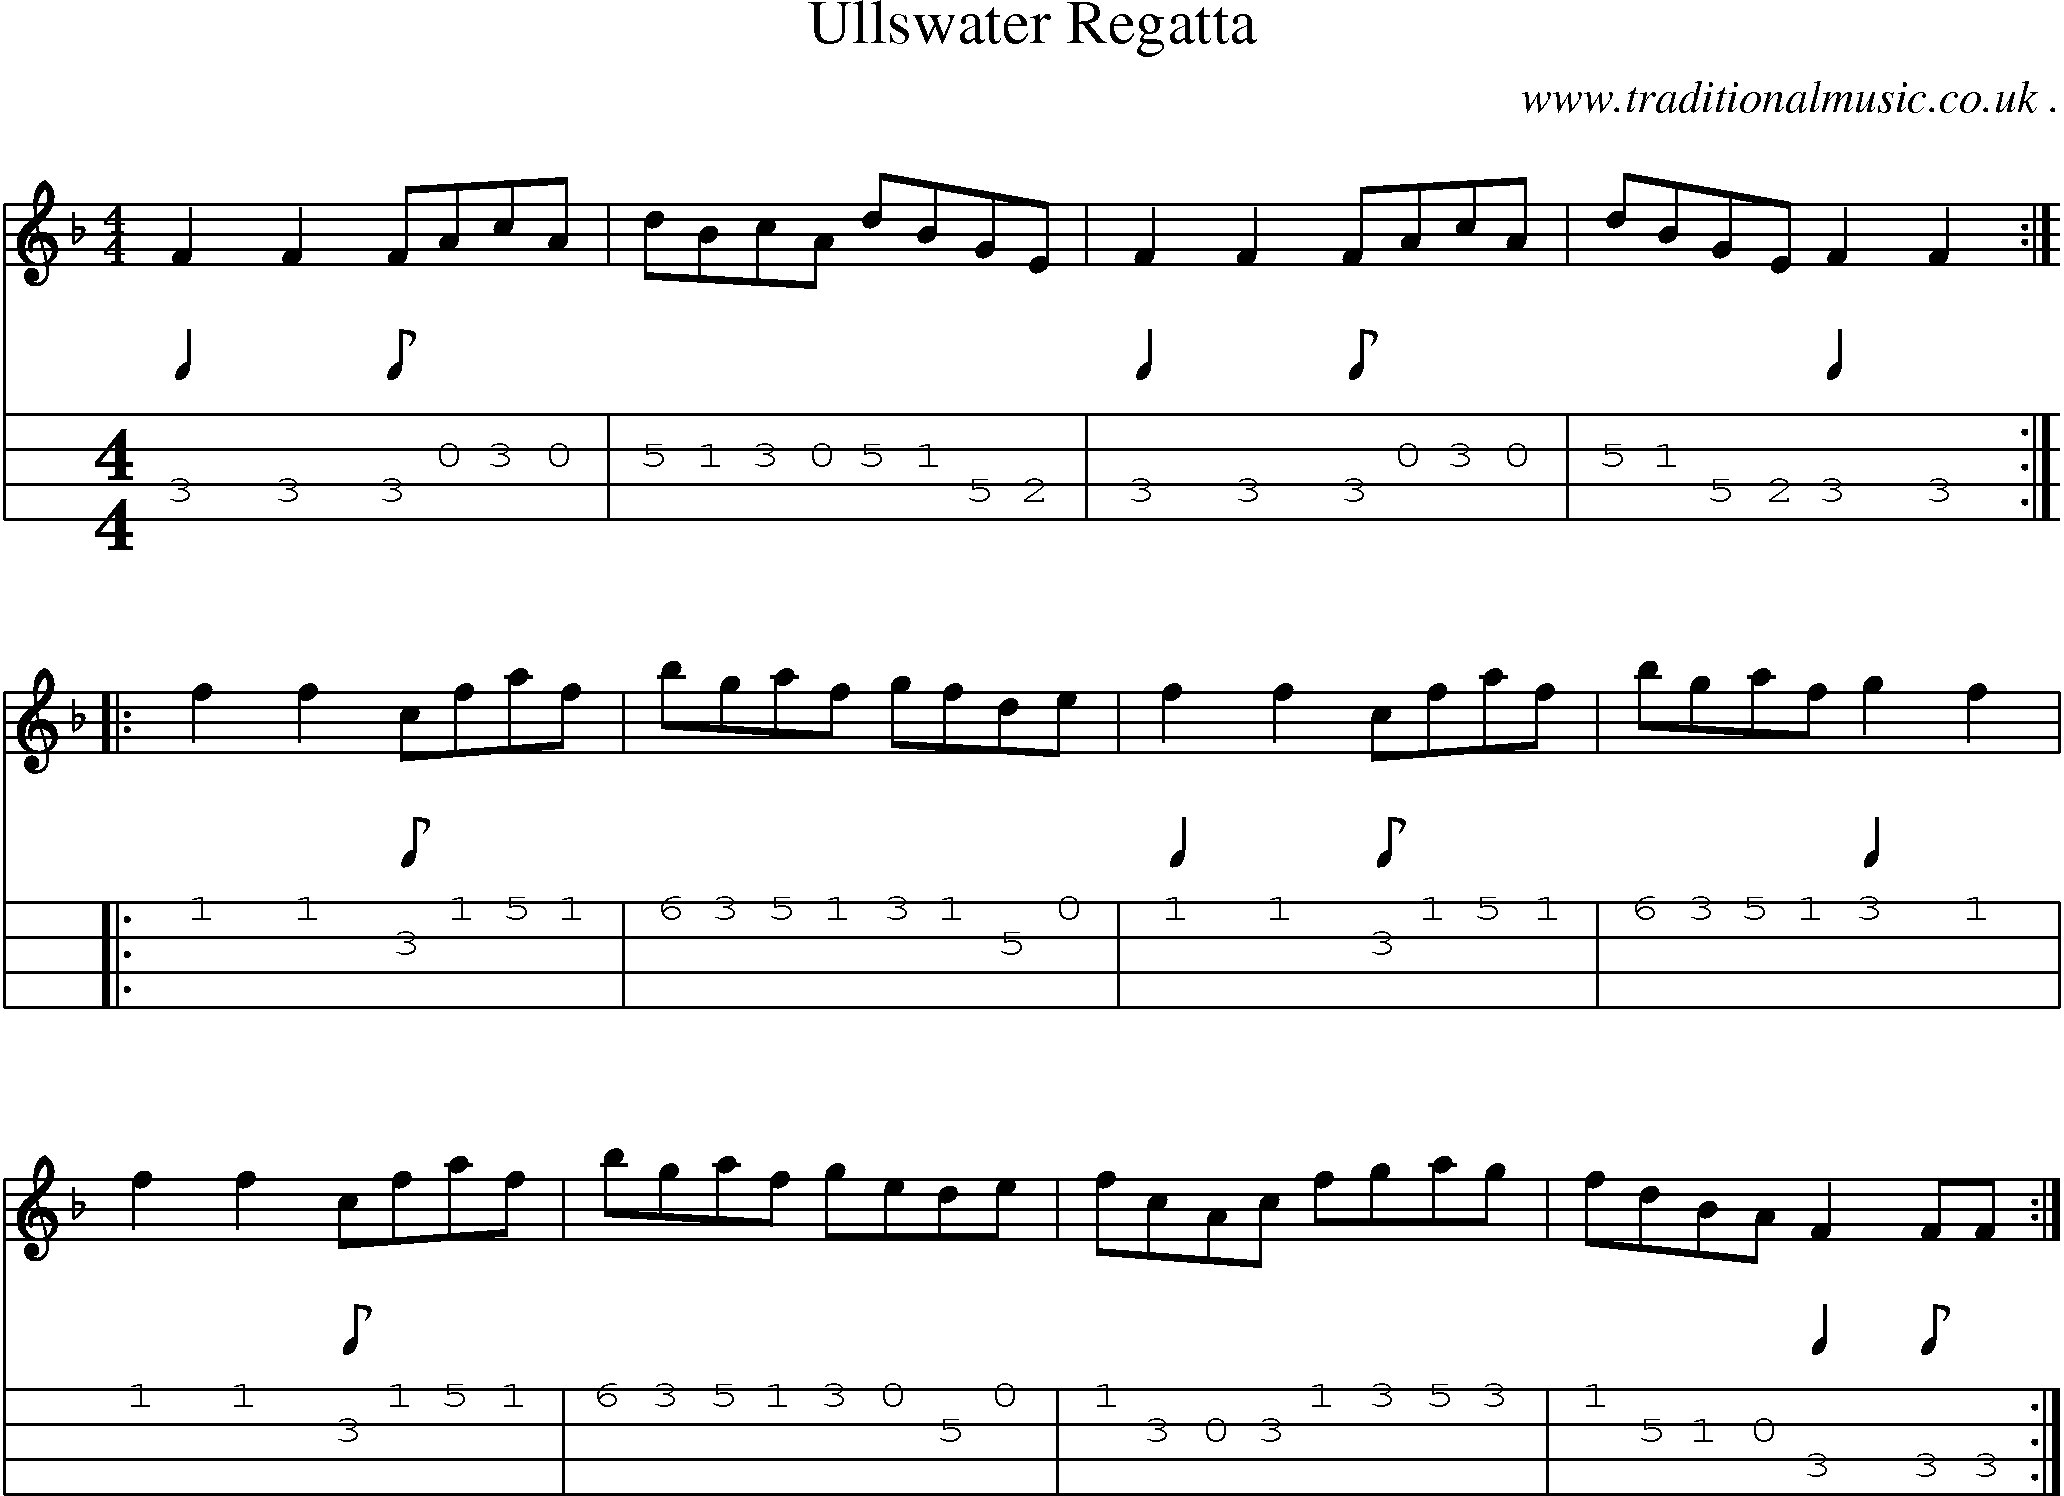 Sheet-Music and Mandolin Tabs for Ullswater Regatta